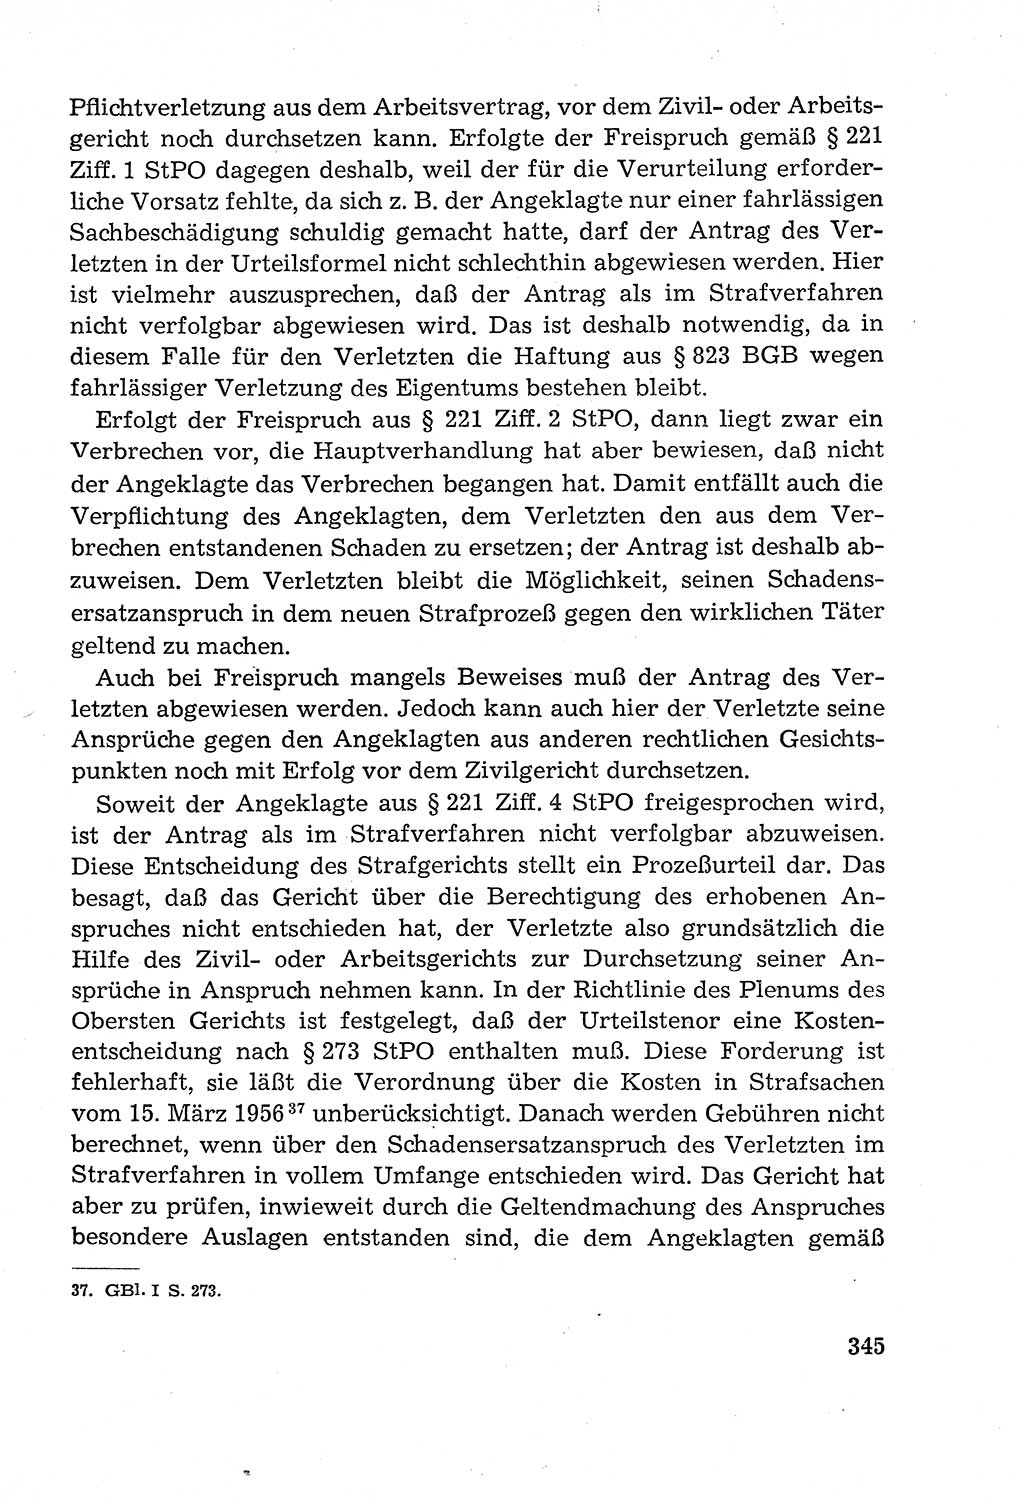 Leitfaden des Strafprozeßrechts der Deutschen Demokratischen Republik (DDR) 1959, Seite 345 (LF StPR DDR 1959, S. 345)